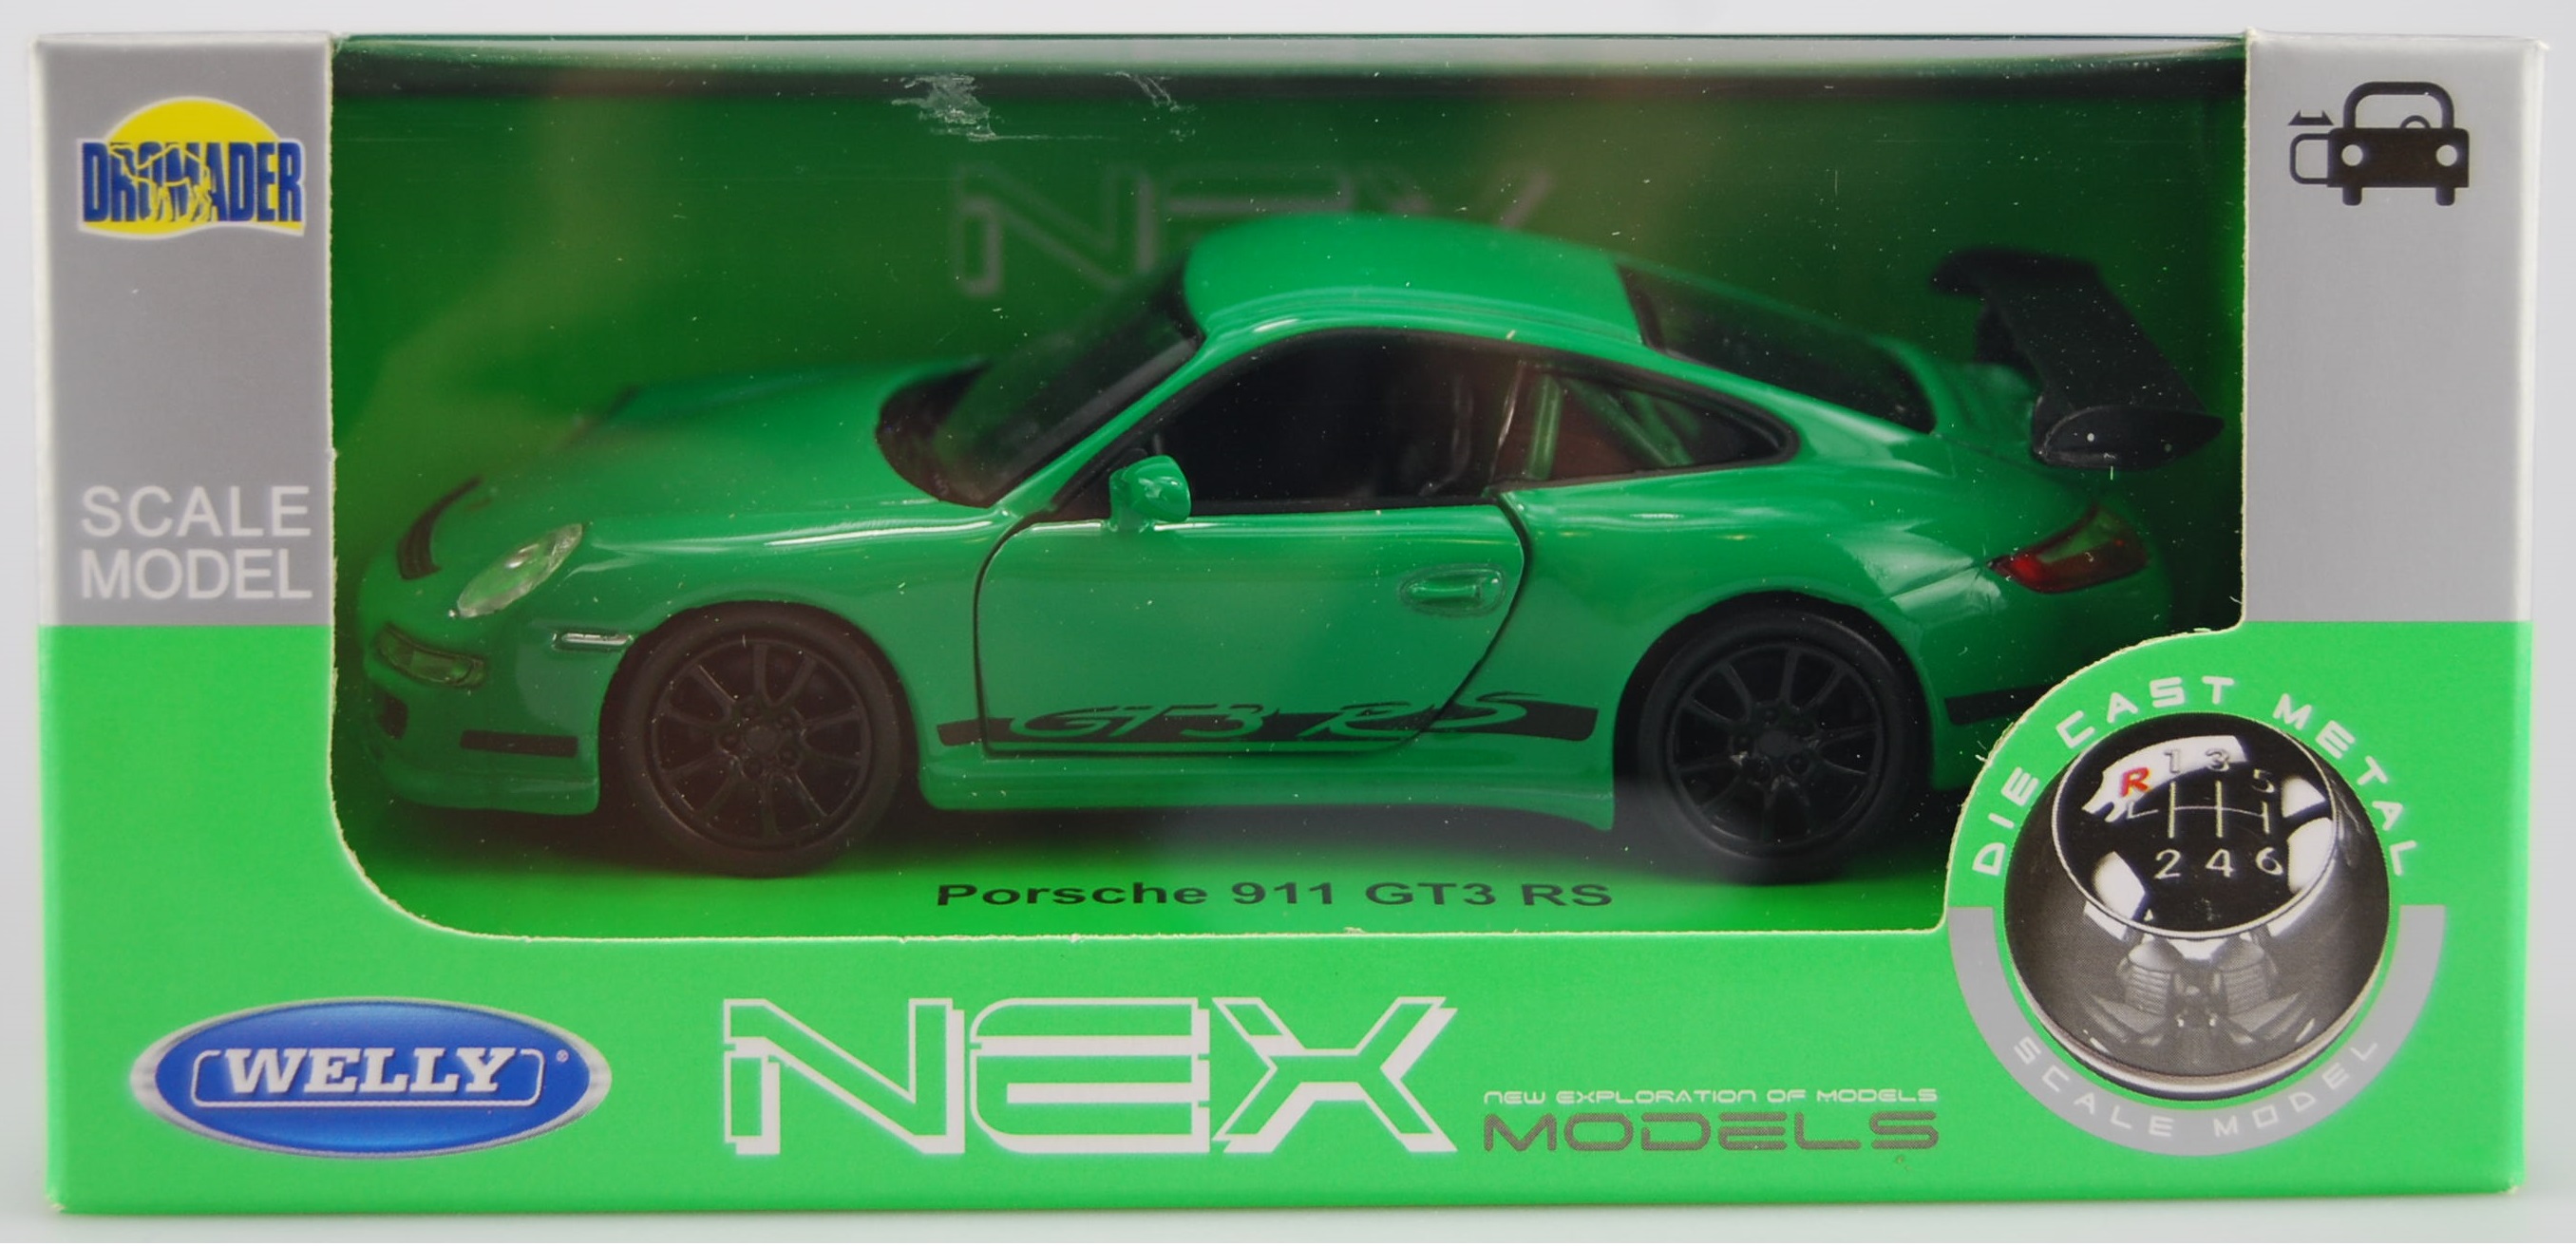 Details About Porsche 911 997 Gt3 Rs Green 134 139 Welly Metal Car Nib